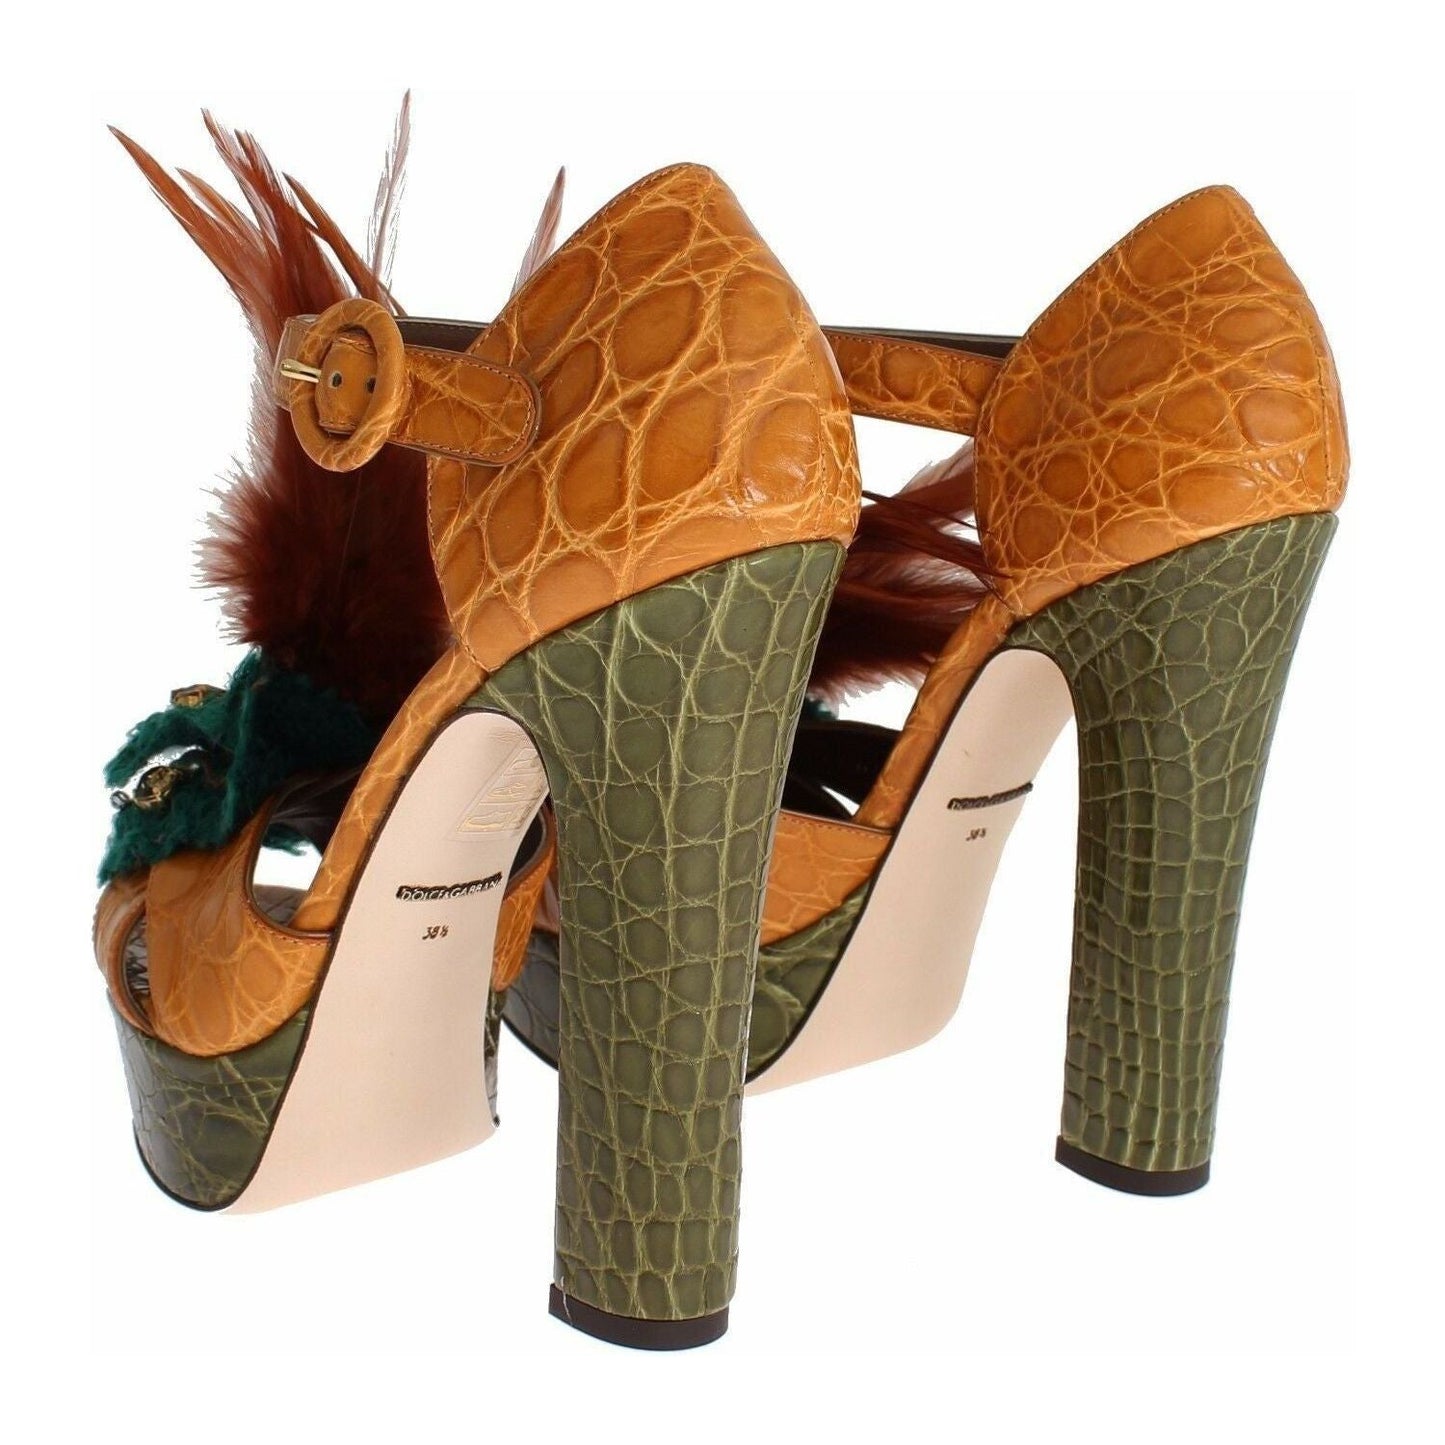 Dolce & Gabbana Multicolor Crystal Ankle Strap Platform Sandals orange-leather-crystal-platform-sandal-shoes